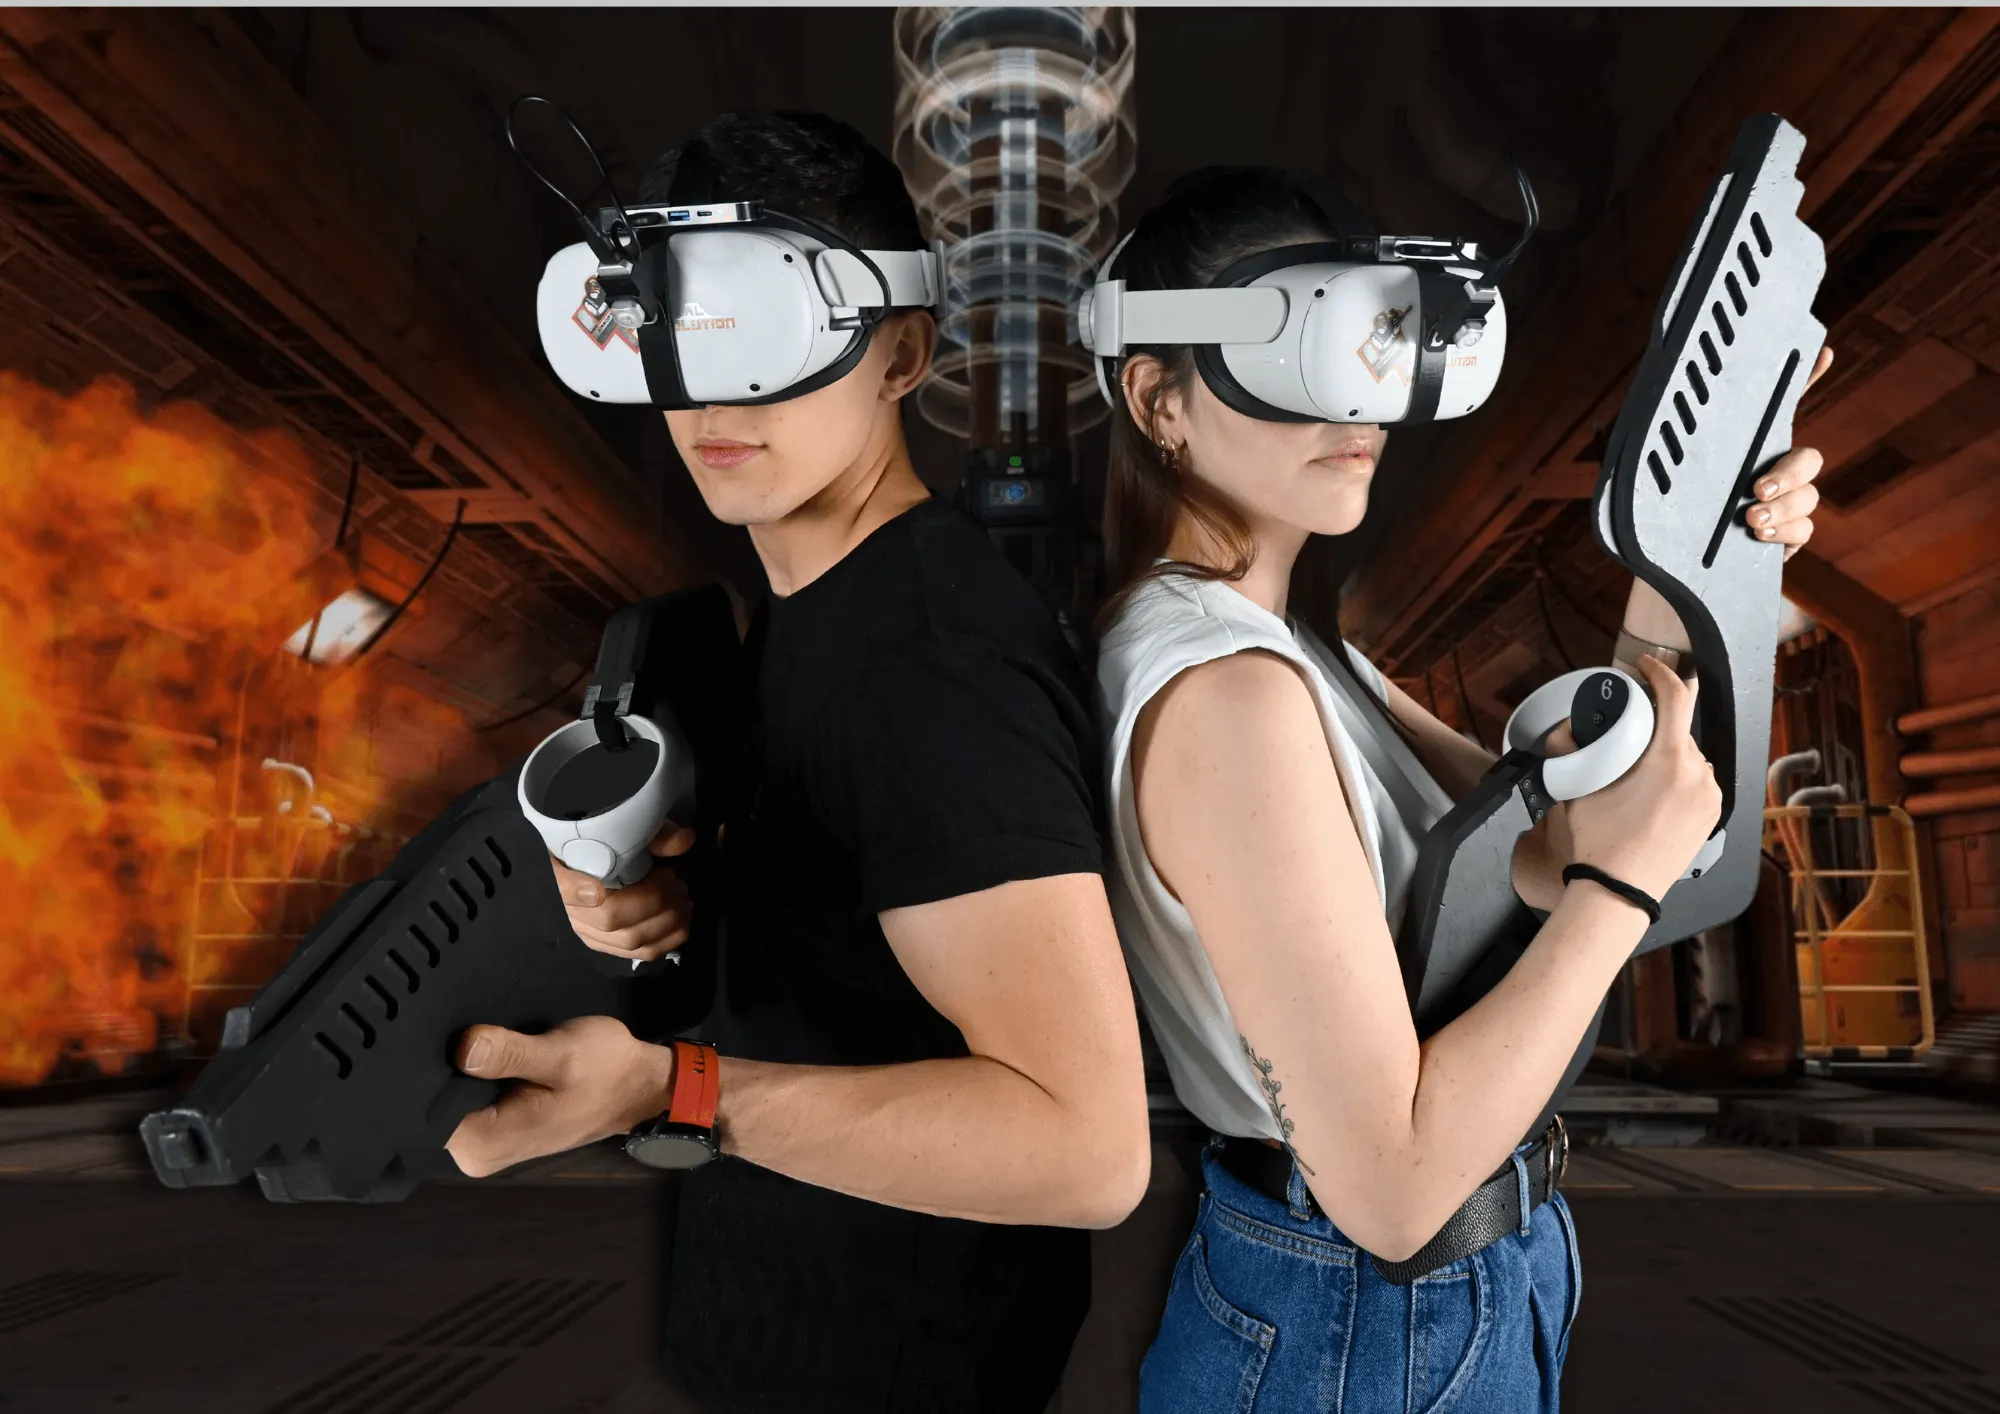 Post VR Airsoft - ¿Quienes somos?